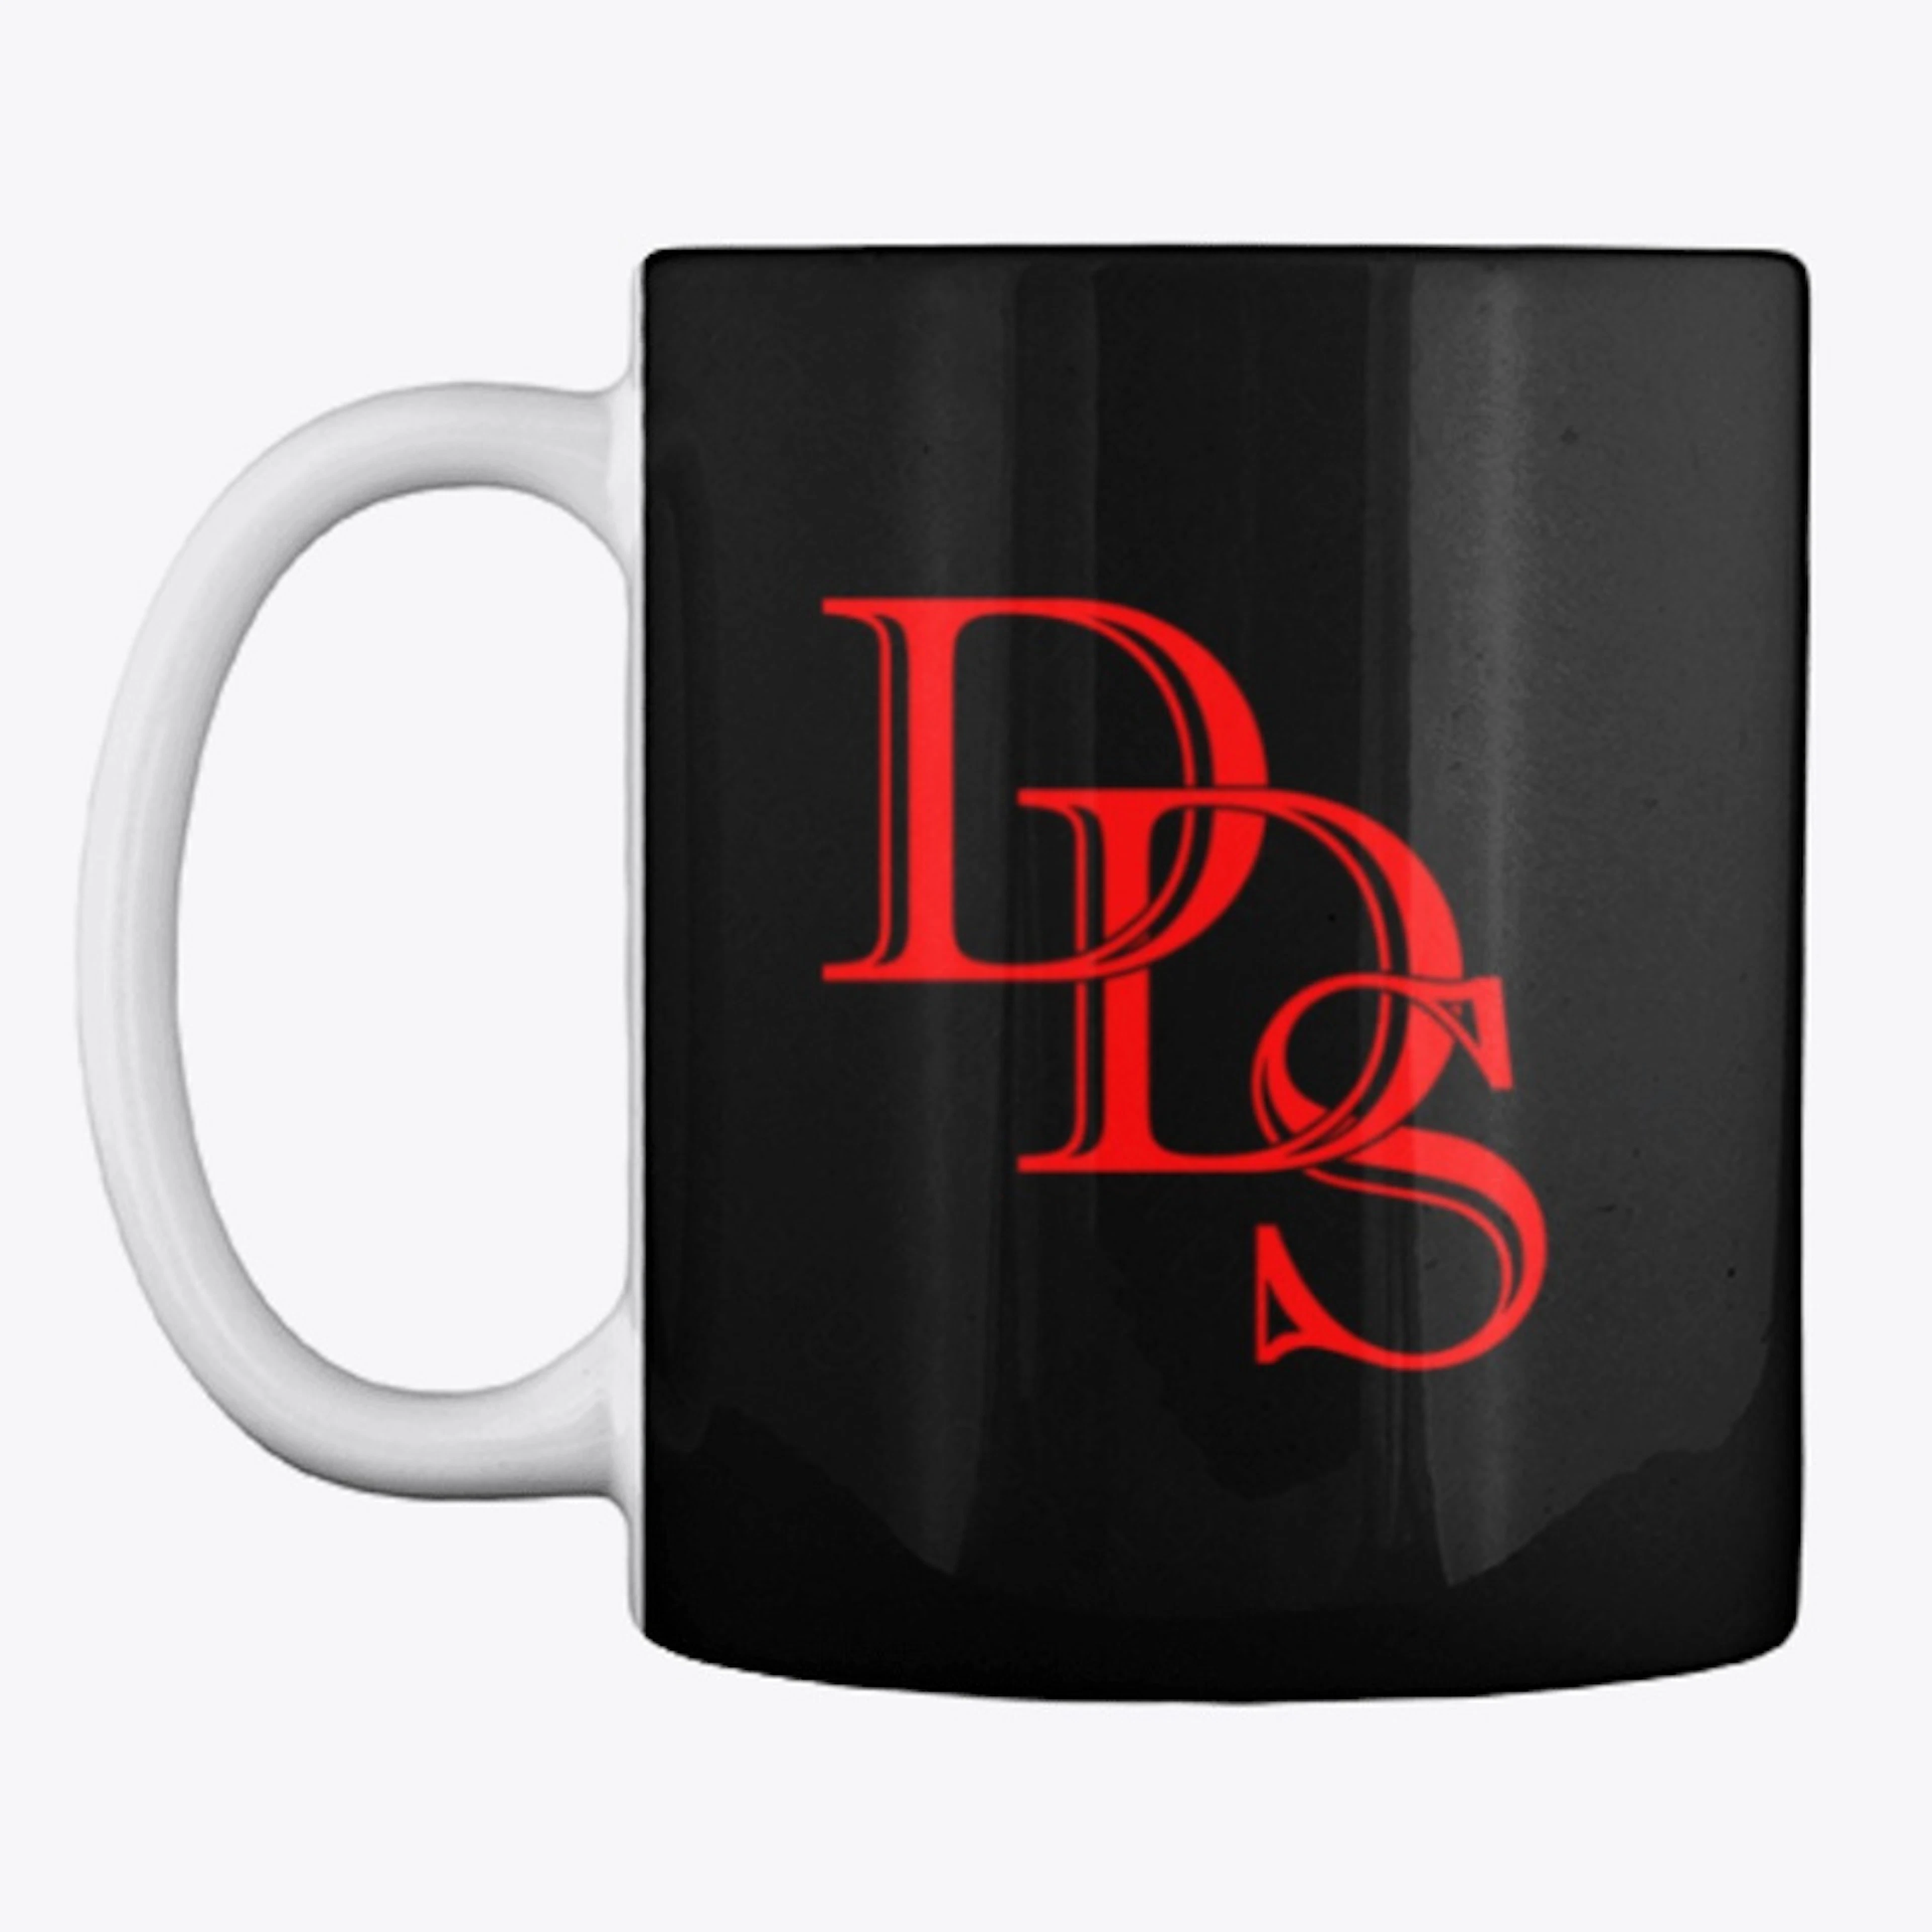 DDS Workshop Coffee Mug